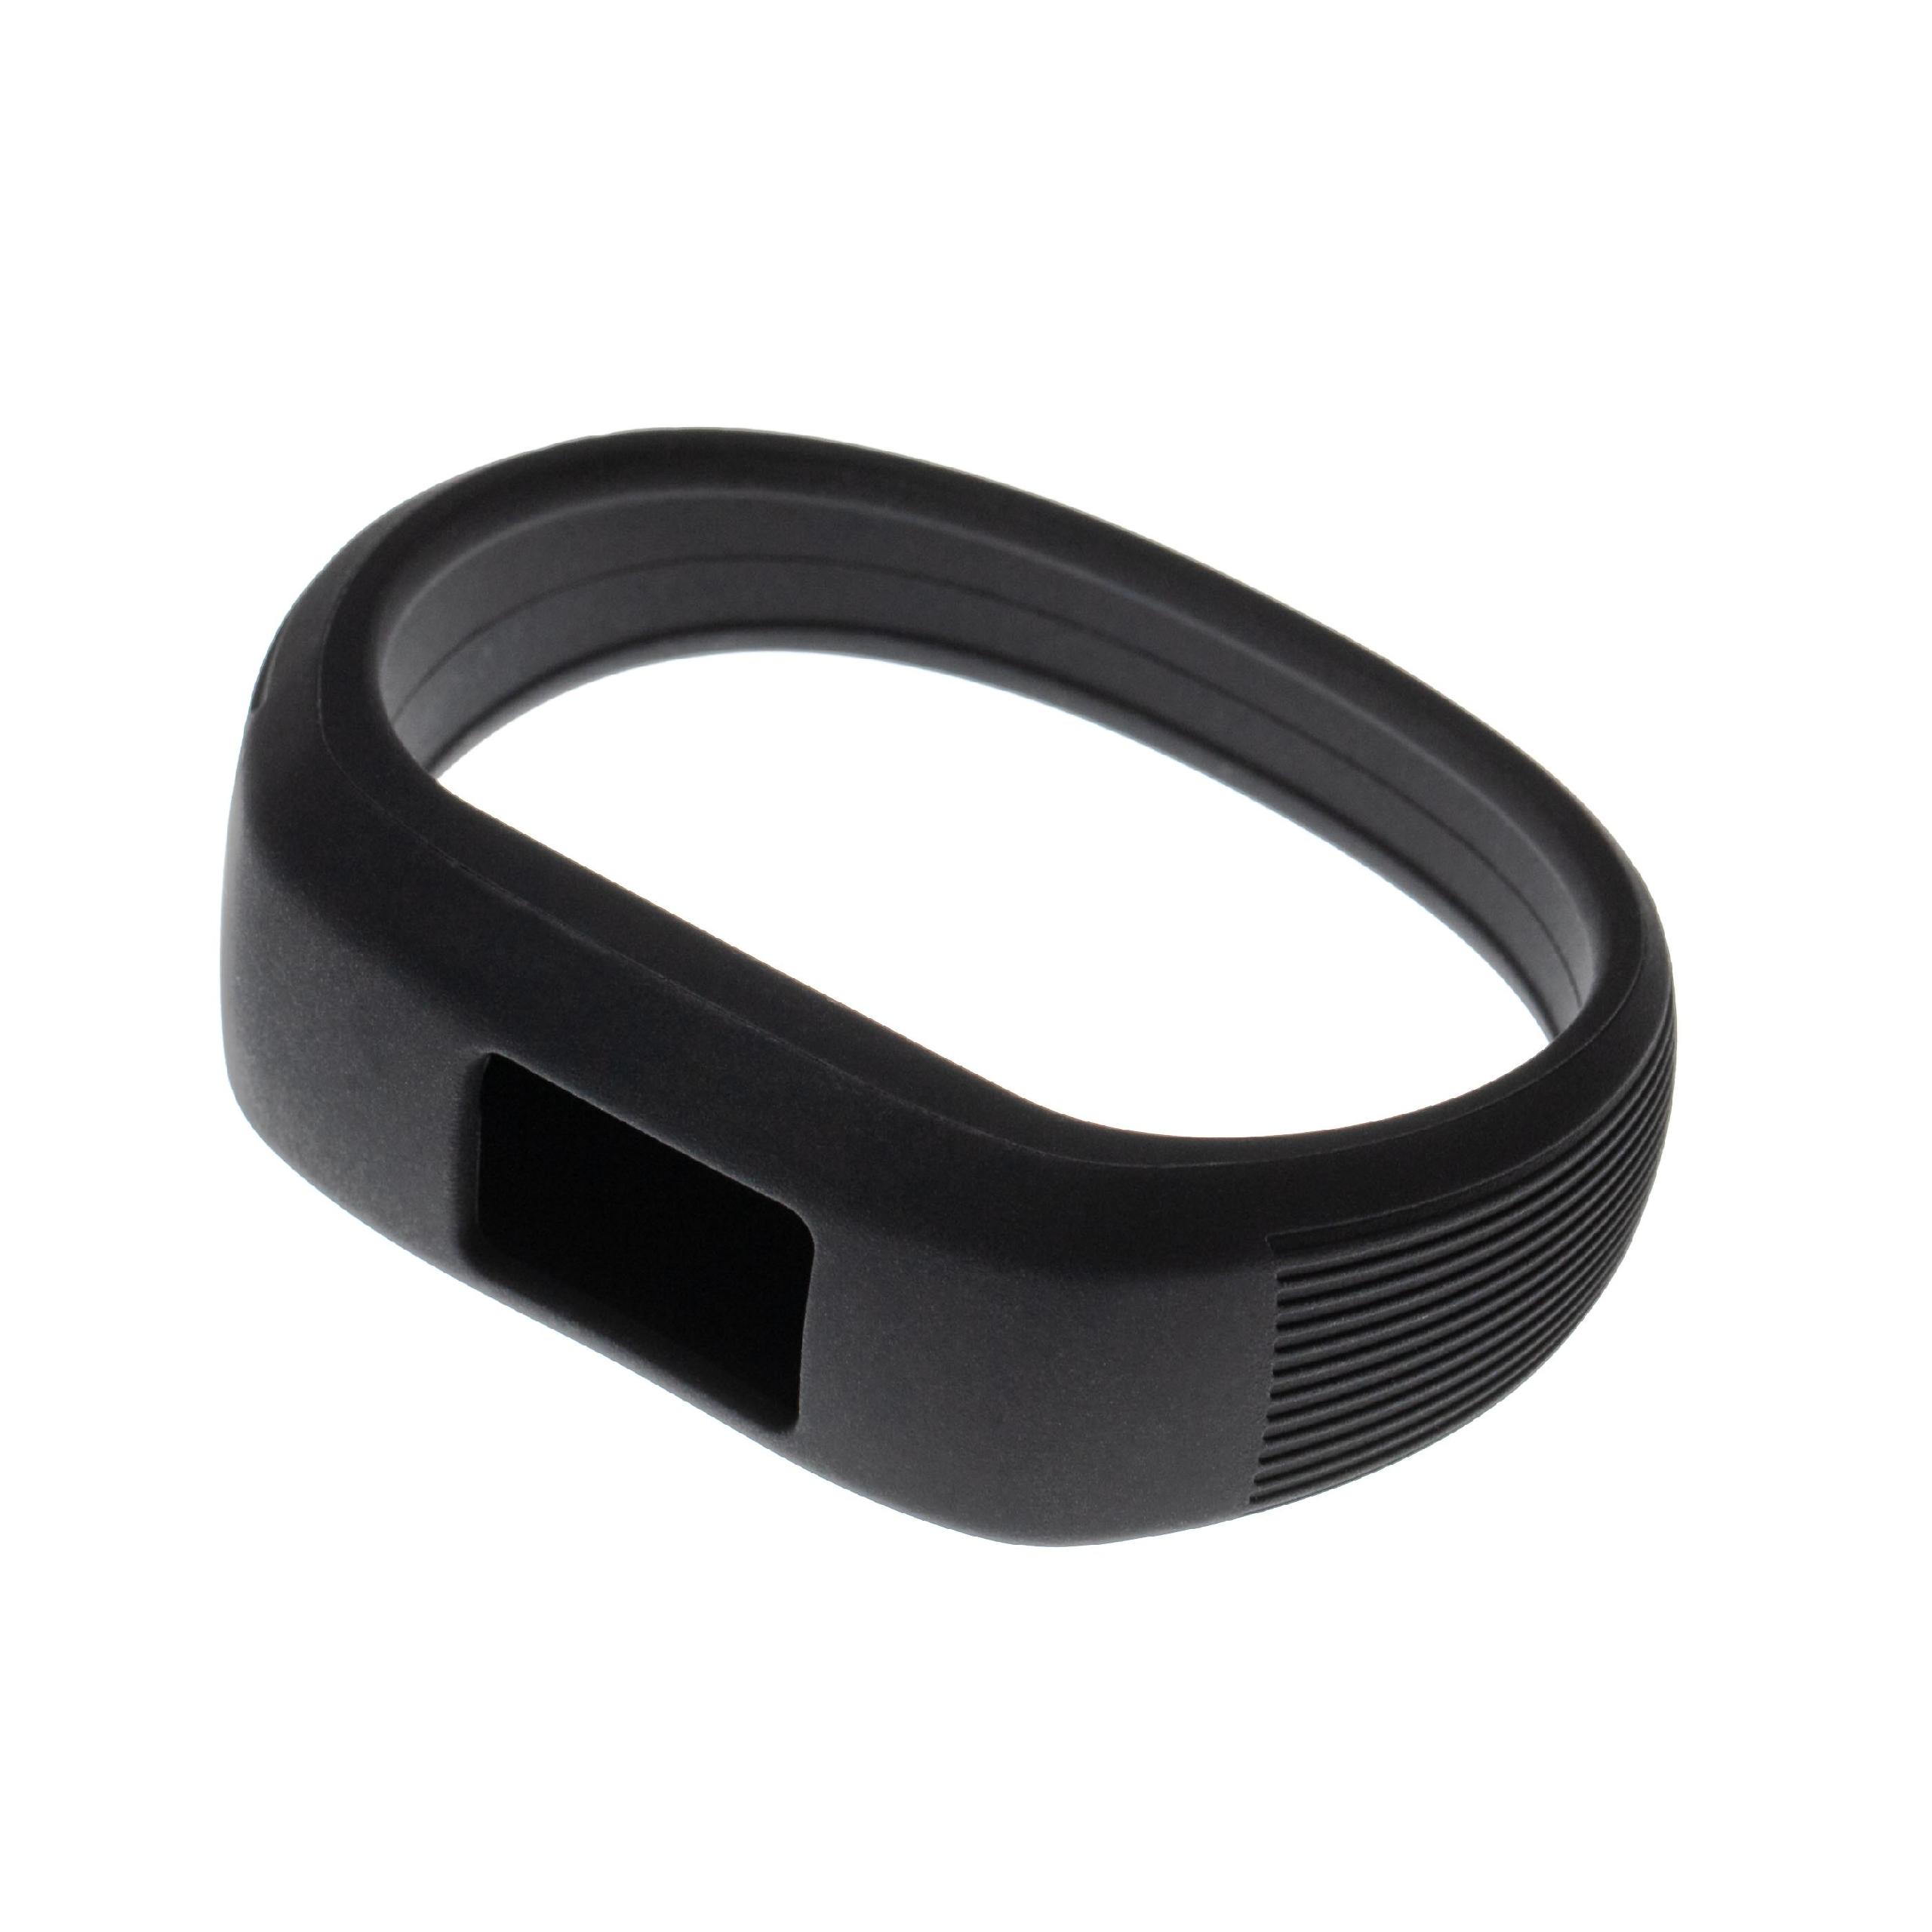 Armband Kinder für Garmin Vivofit Smartwatch - Bis 170 mm Gelenkumfang, schwarz